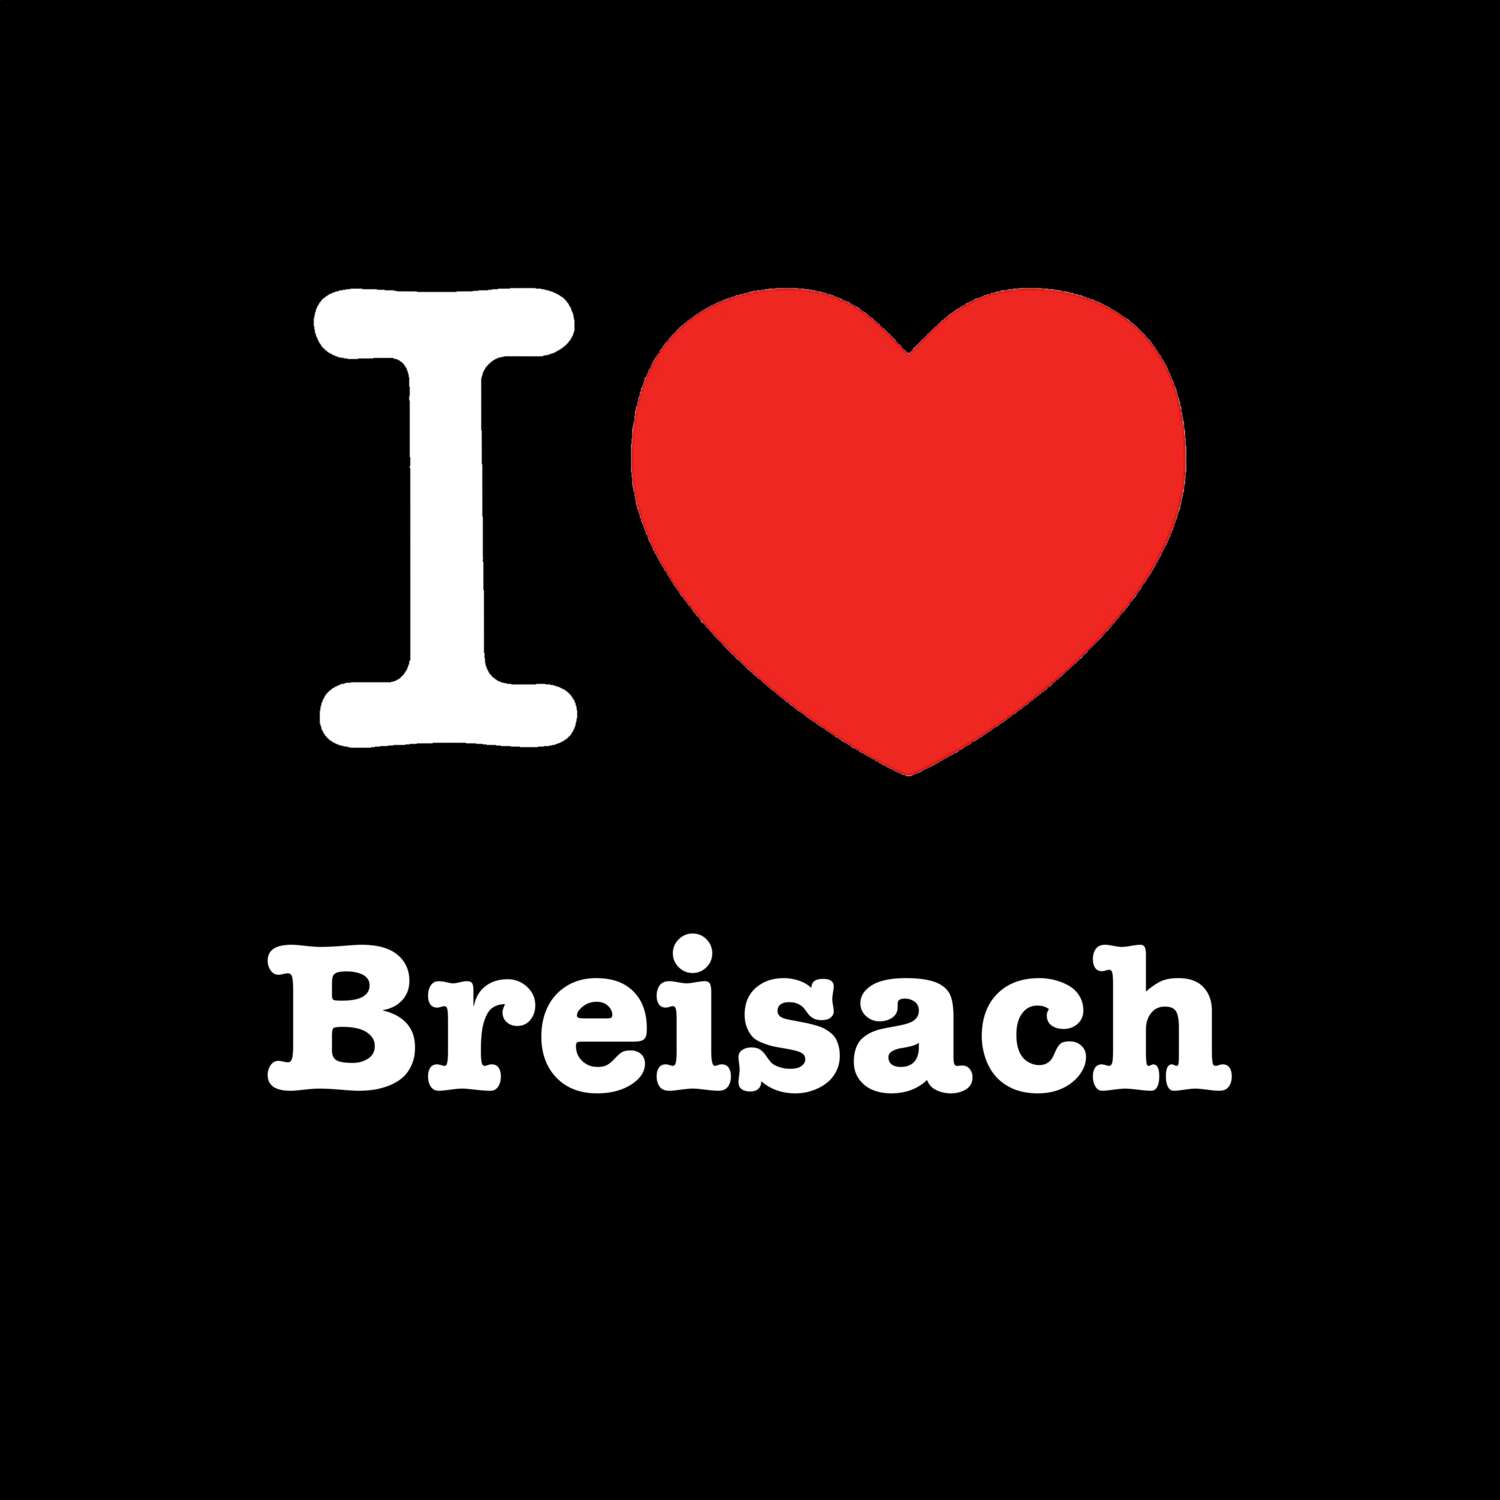 Breisach T-Shirt »I love«